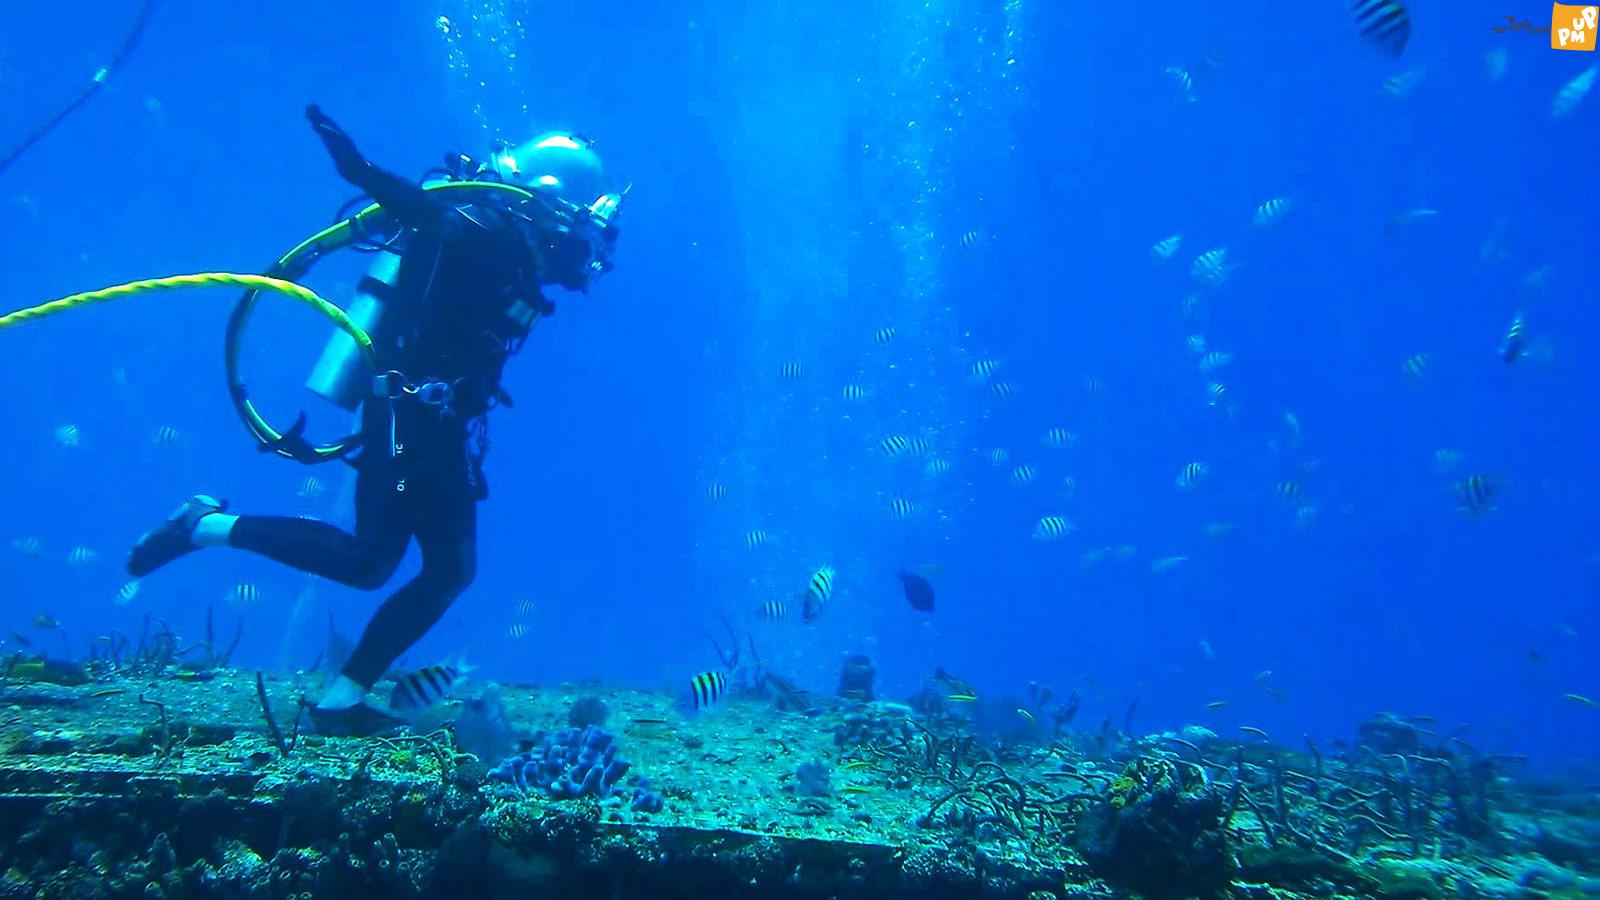 دیگر زیر دریا زندگی کردن رویا نیست! | زیستگاه دیپ، این رویا را به واقعیت تبدیل کرده است!